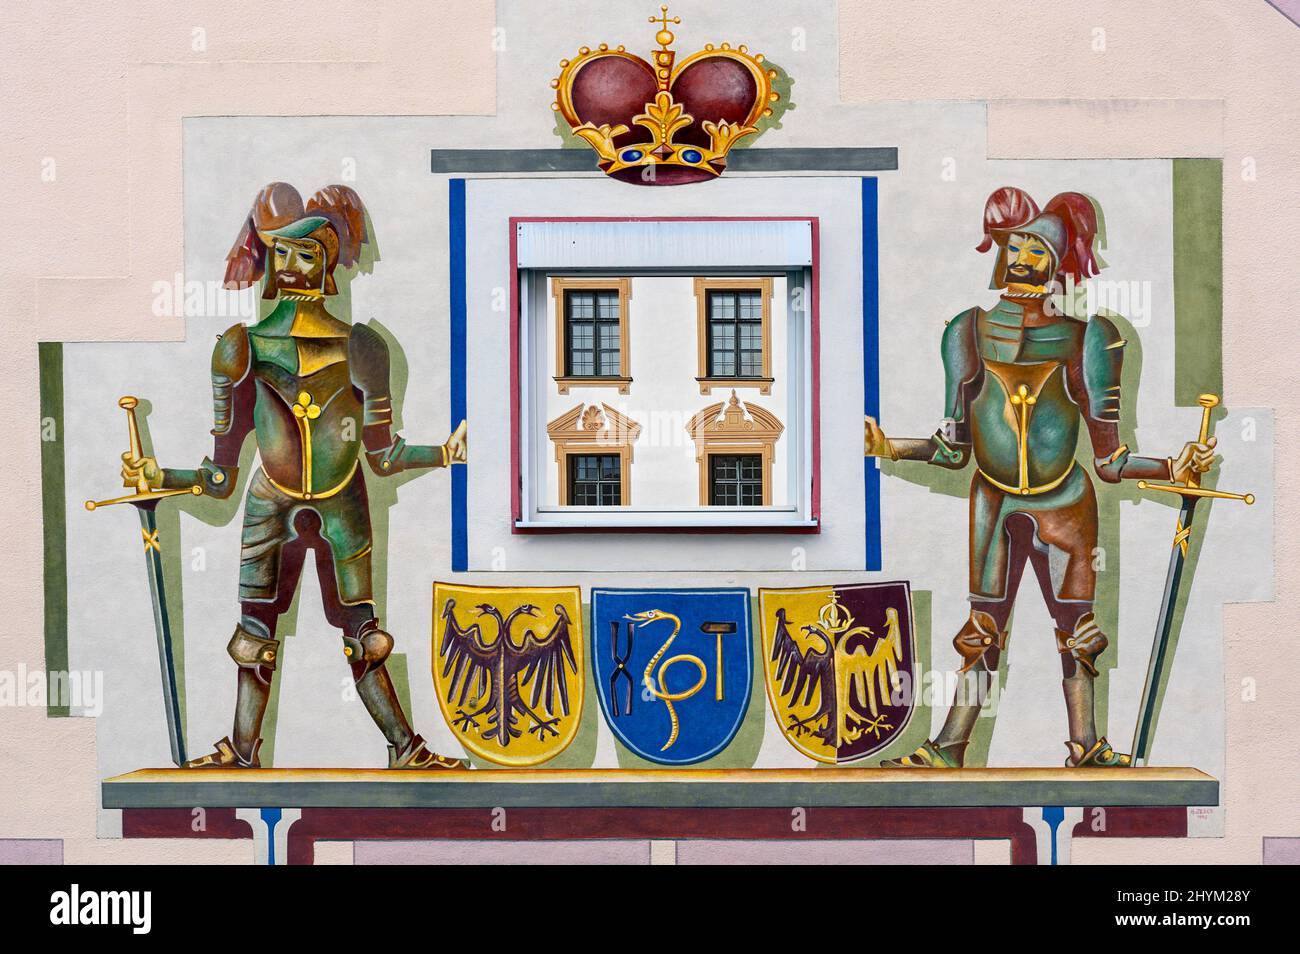 Fresque murale, armoiries et deux chevaliers de H. Zeller 1995, Kempten, Allgaeu, Bavière, Allemagne Banque D'Images